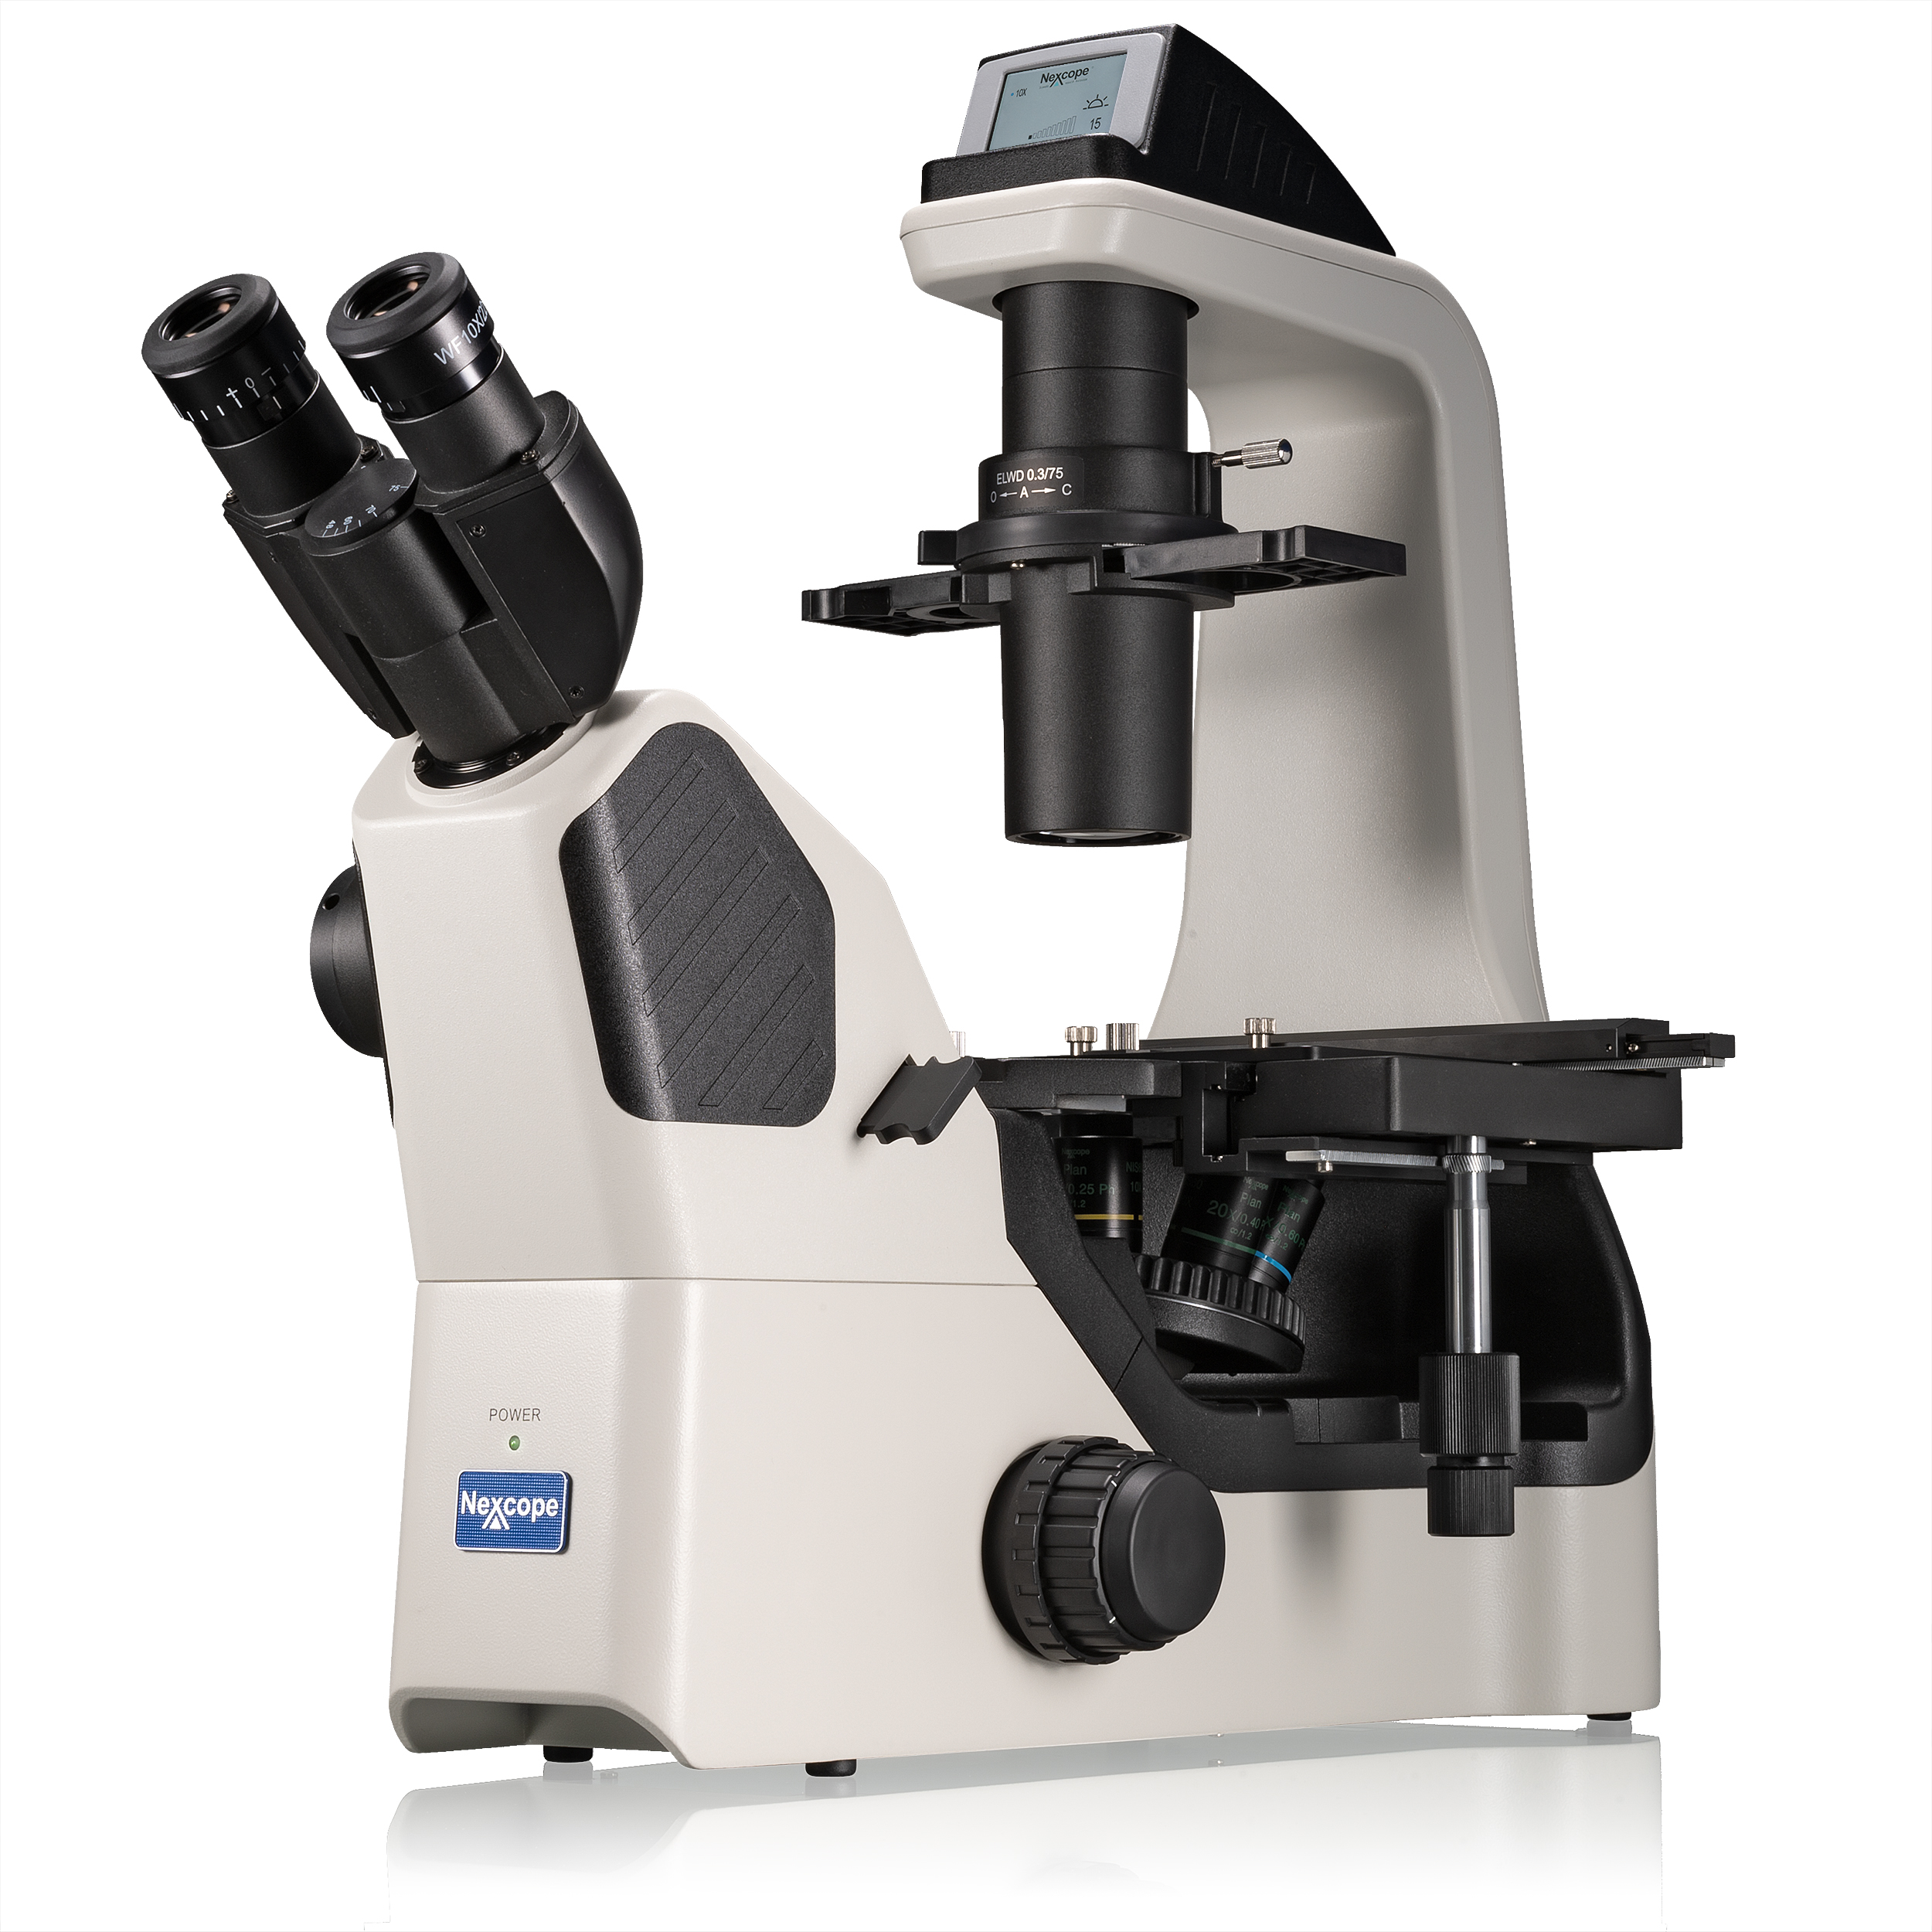 Microscopio inverso profesional de laboratorio Nexcope NIB620 con contraste de fase